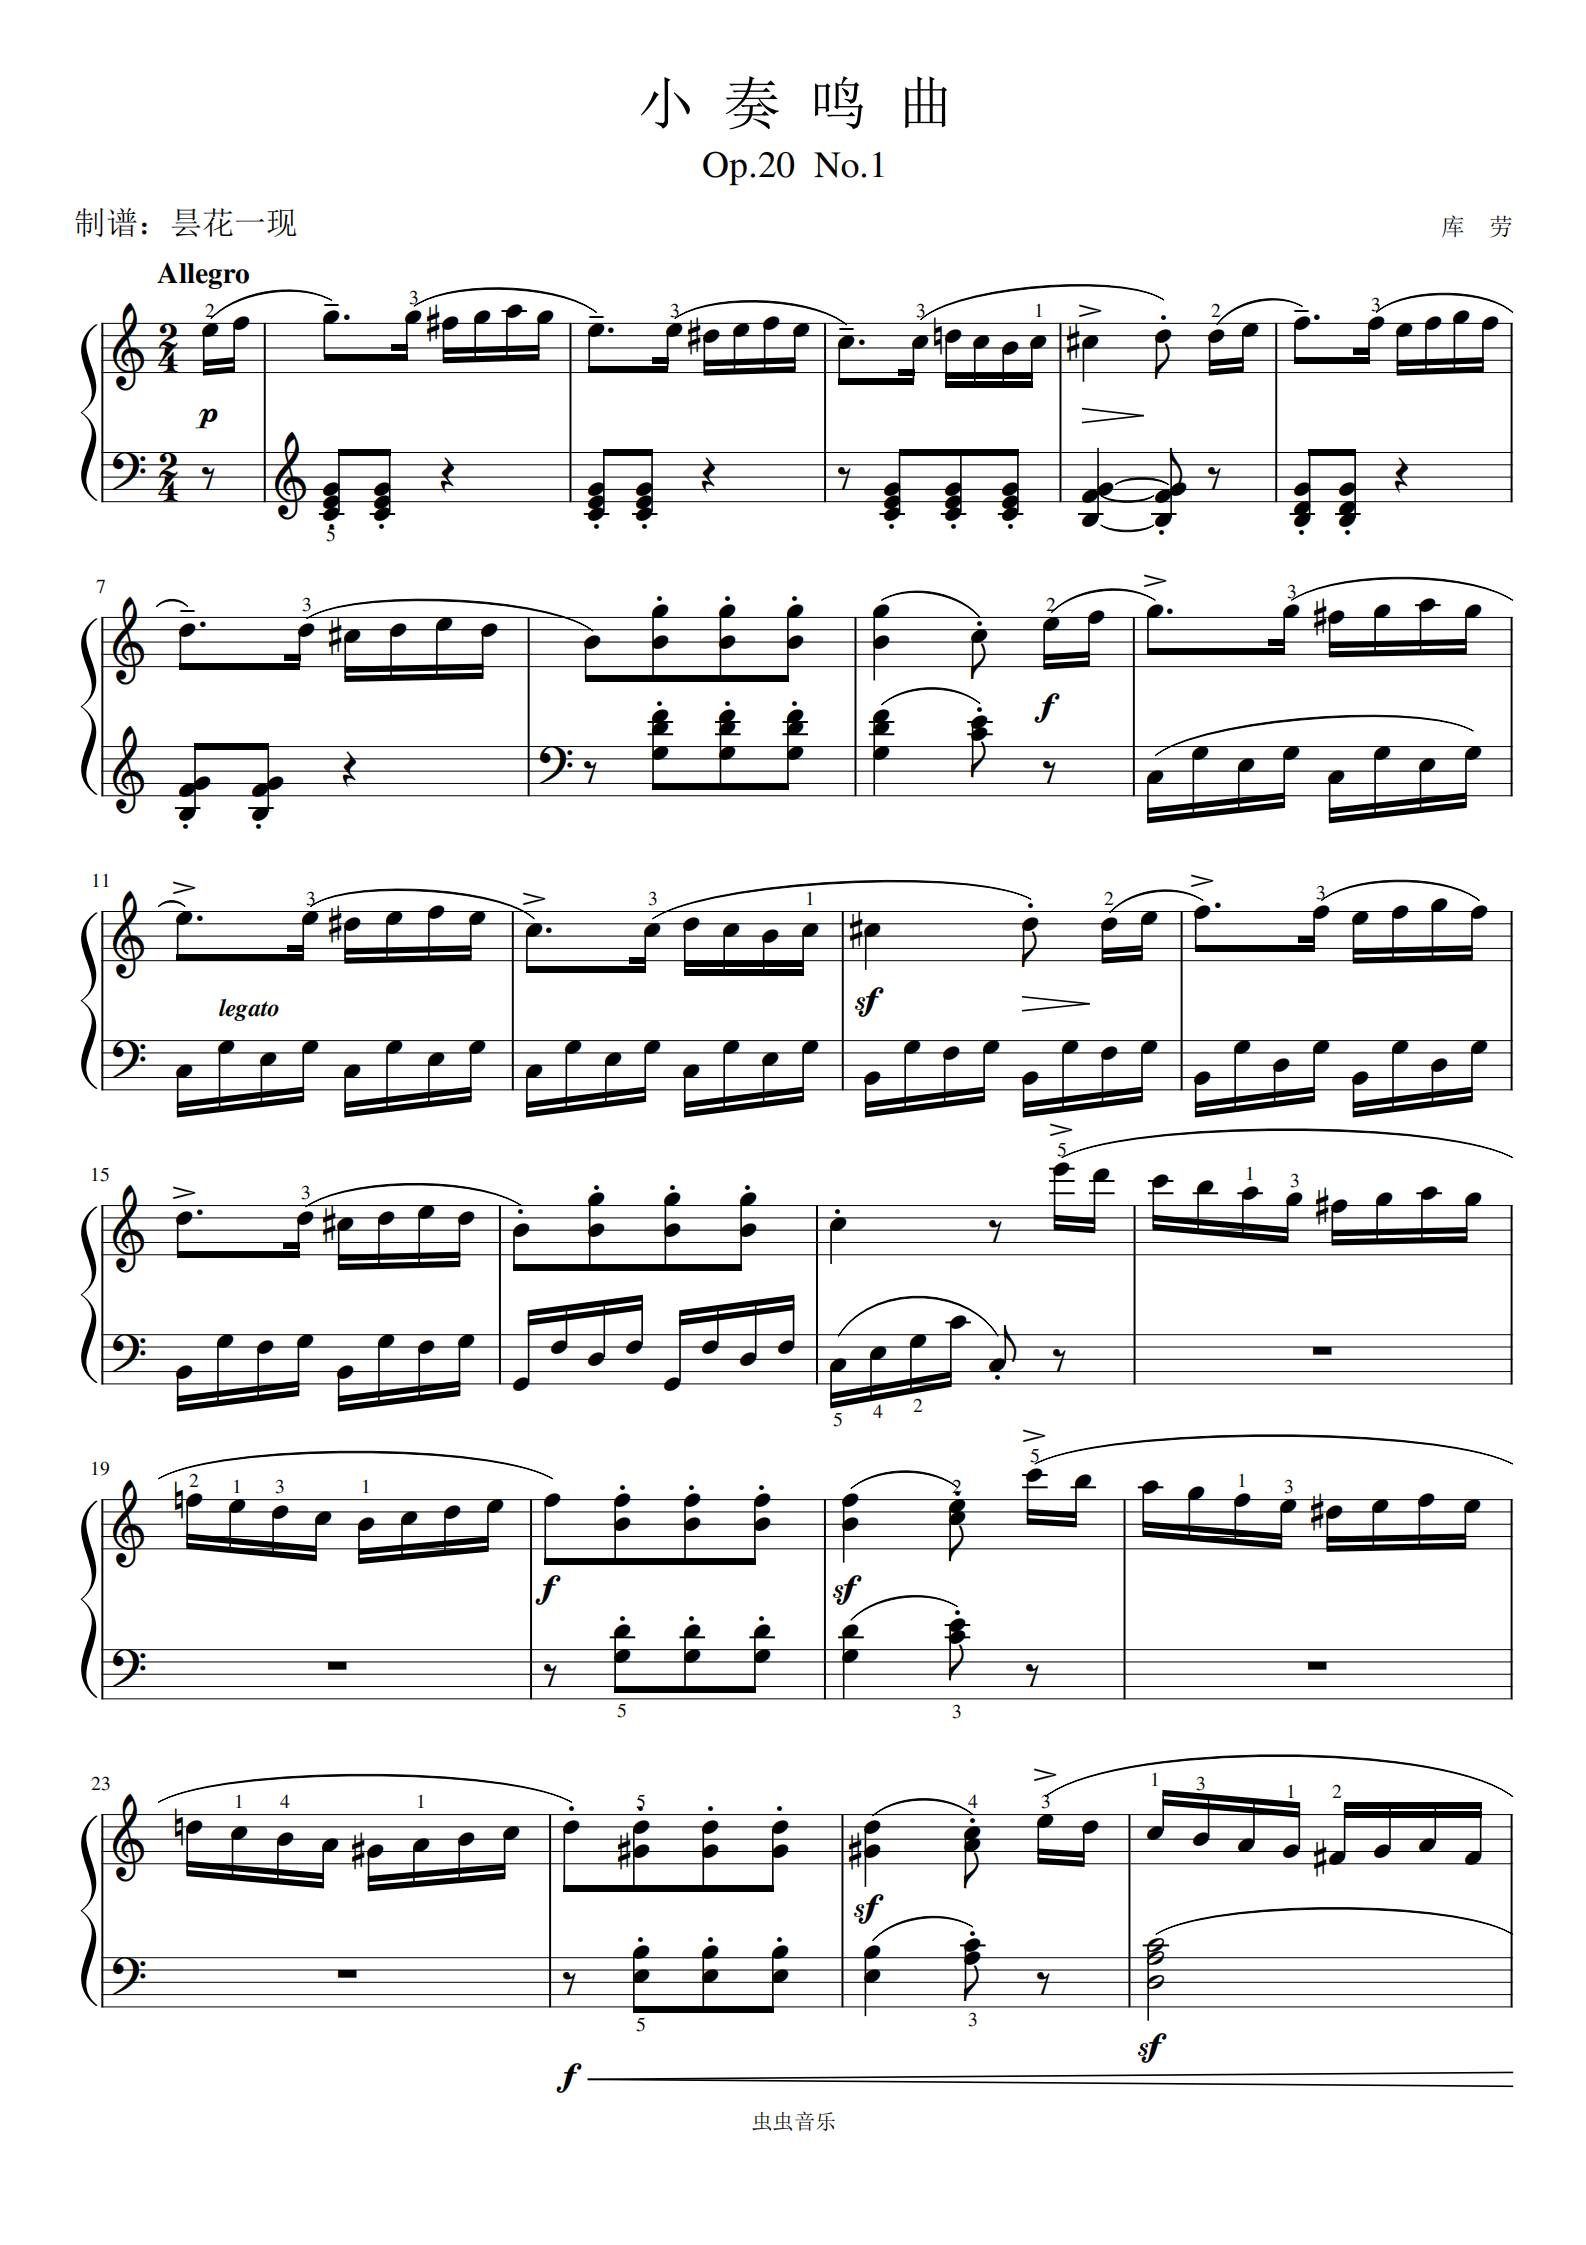 3.库劳-op.20 no.1-3《小奏鸣曲》